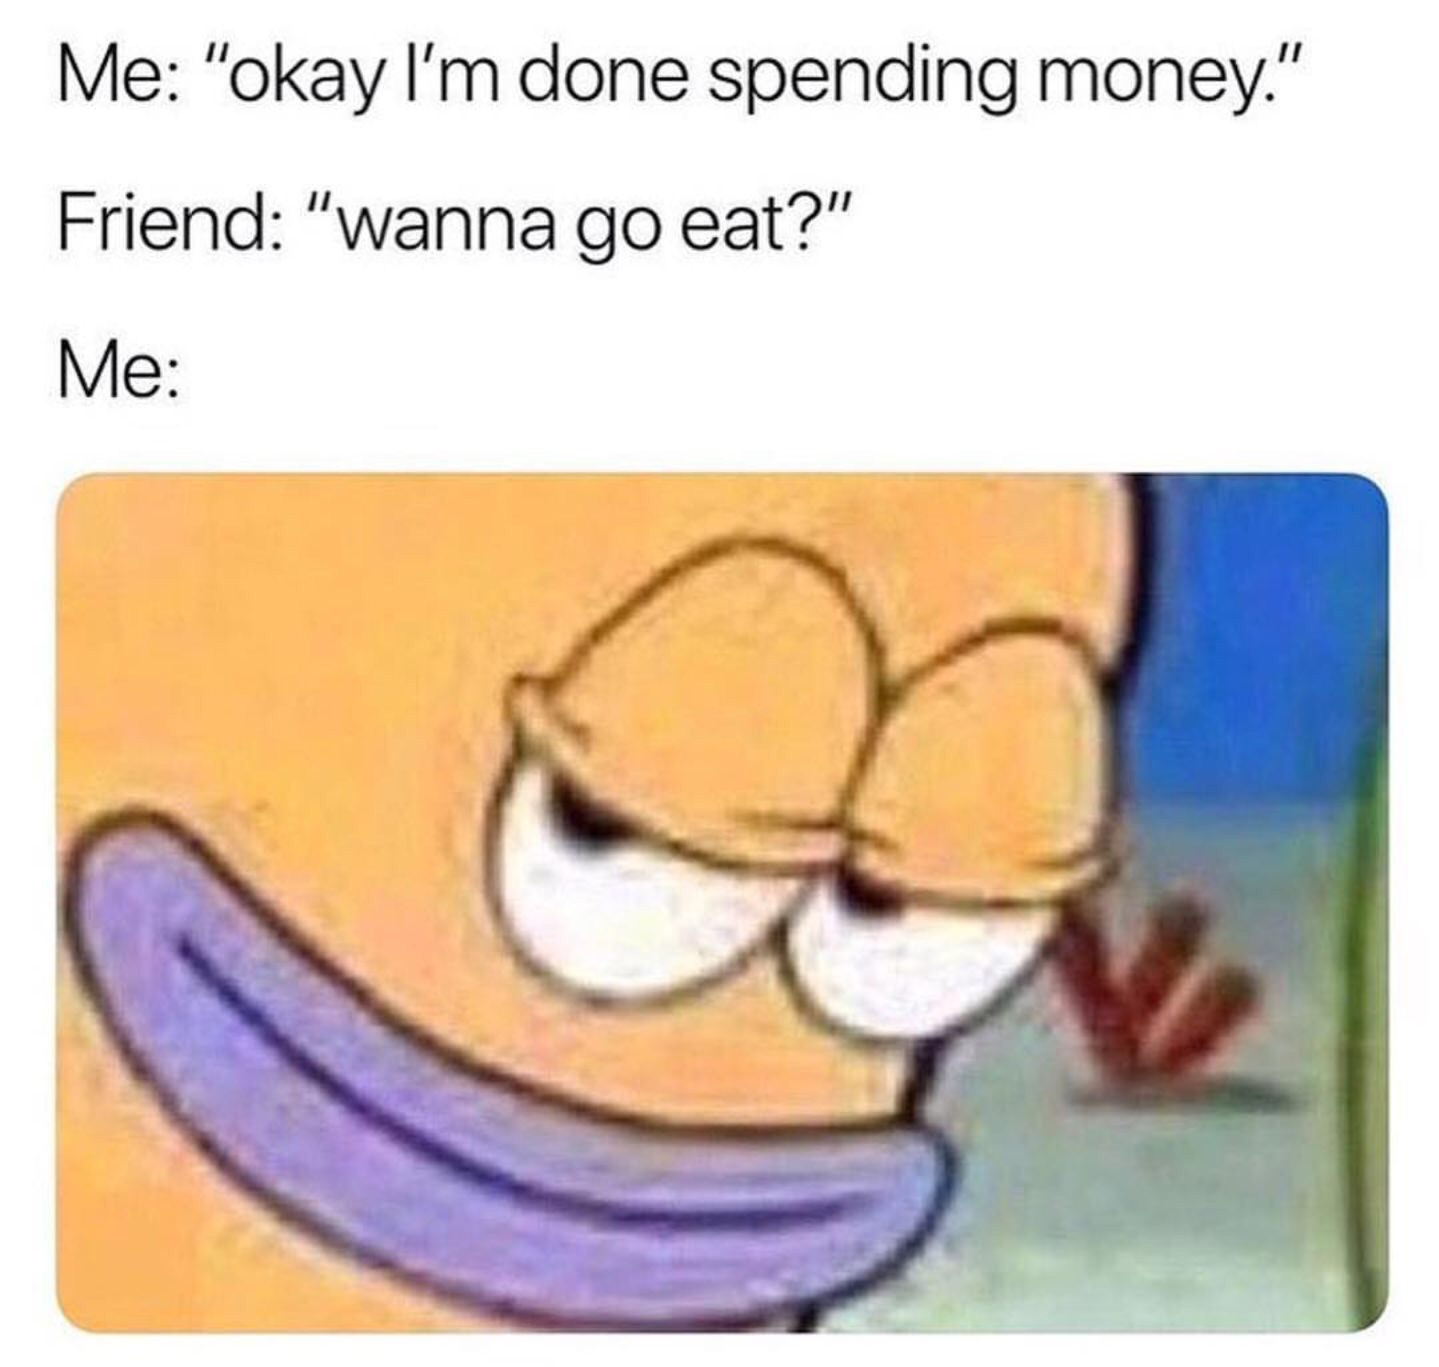 i m done spending money meme - Me "okay I'm done spending money." Friend "wanna go eat?" Me